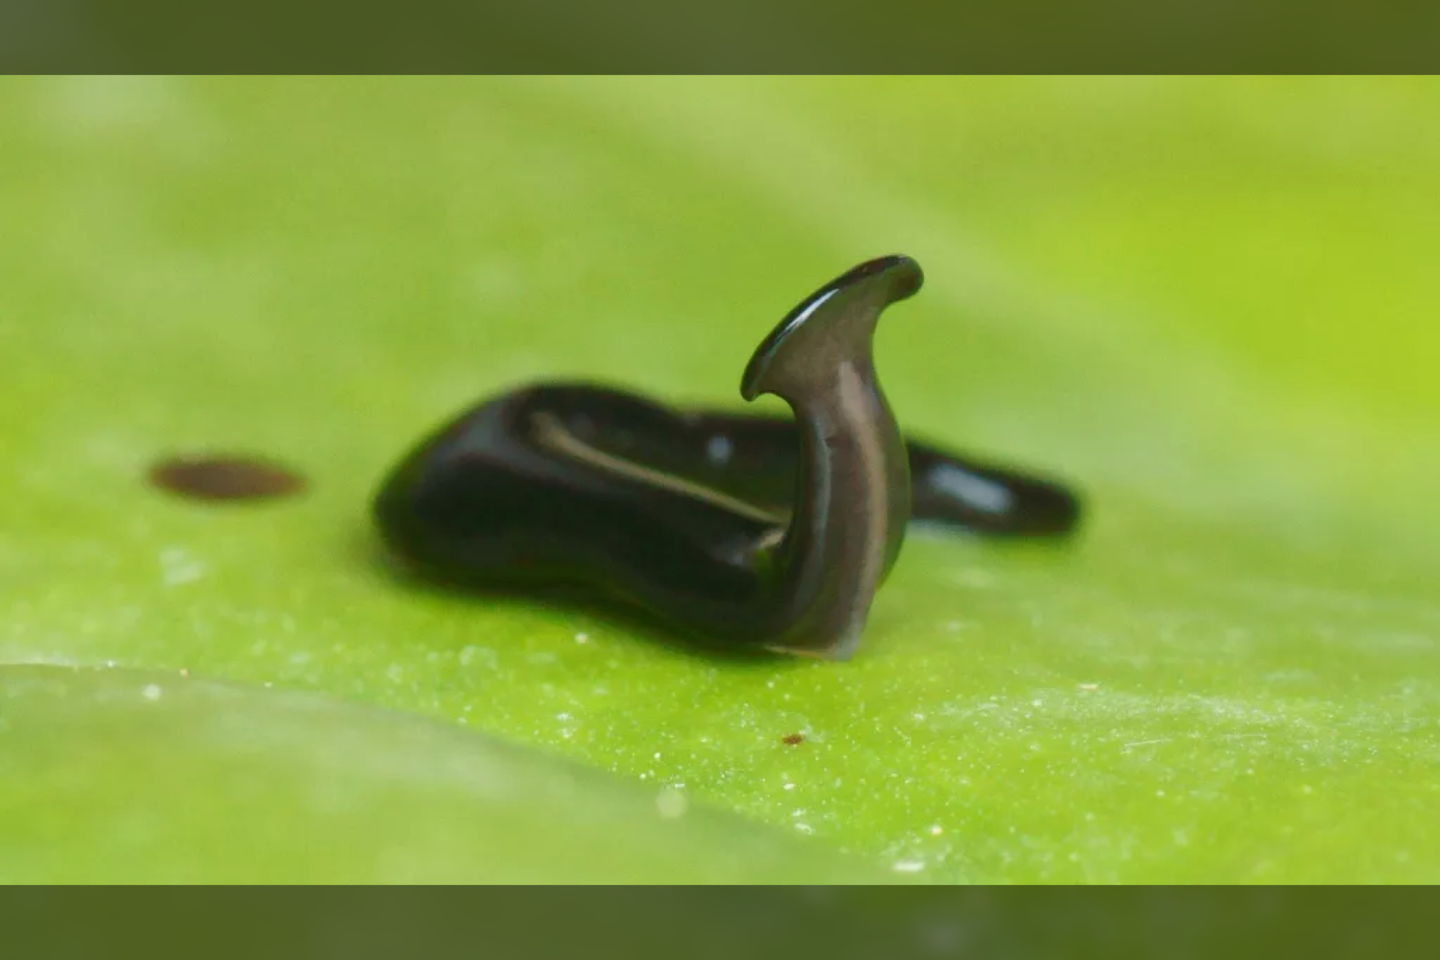  Mokslininkai atrado naują plokščiosios kūjagalvės kirmėlės rūšį, kuri šiek tiek primena miniatiūrinę karališkąją kobrą – arba galbūt mažytę gyvatę su ūsais.<br> P. Groso nuotr.